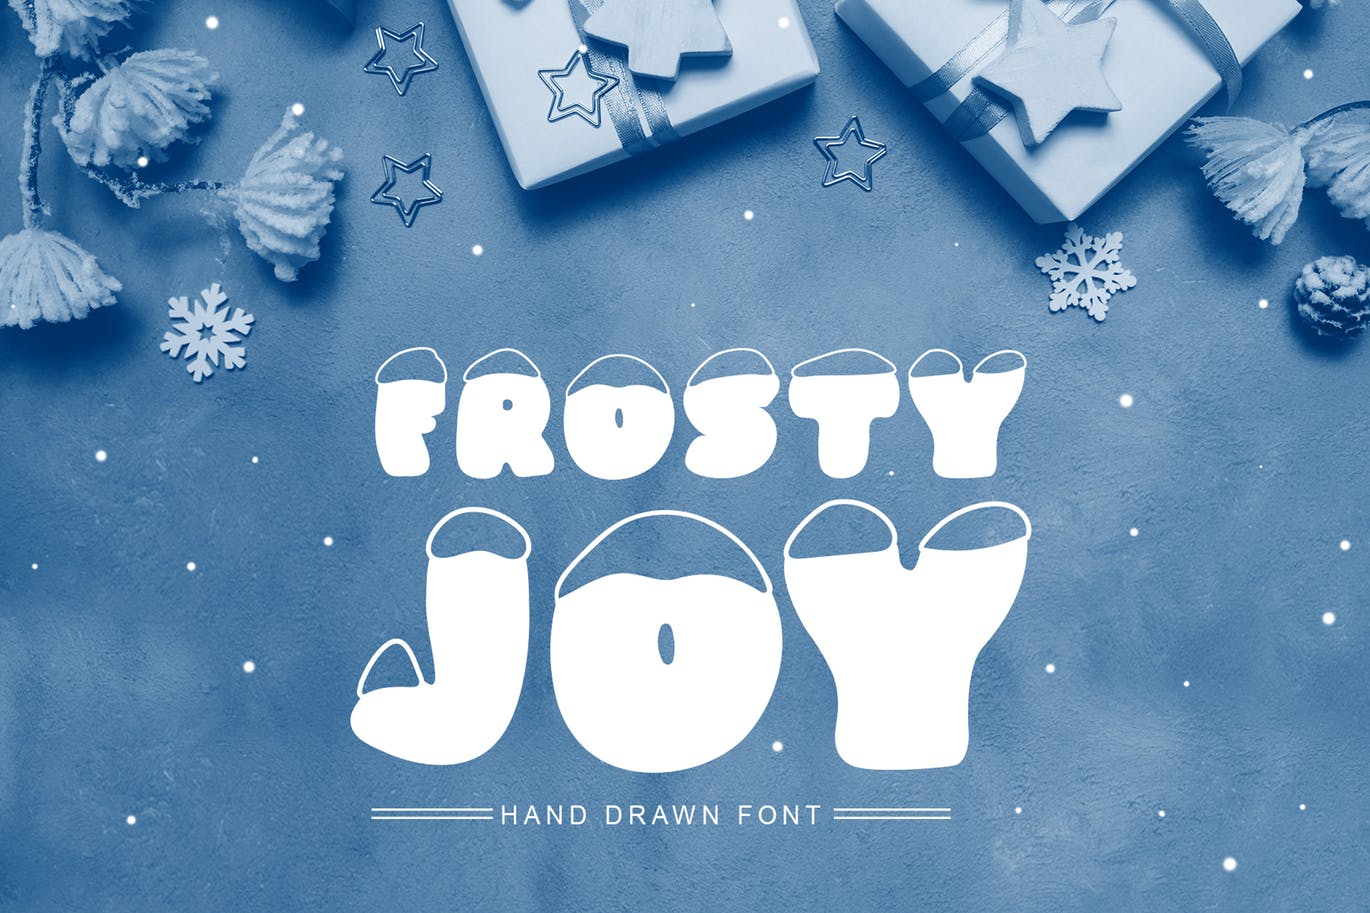 斯堪的纳维亚风格可爱积雪字体16设计素材网精选 Frosty Joy Hand Drawn Display Font插图